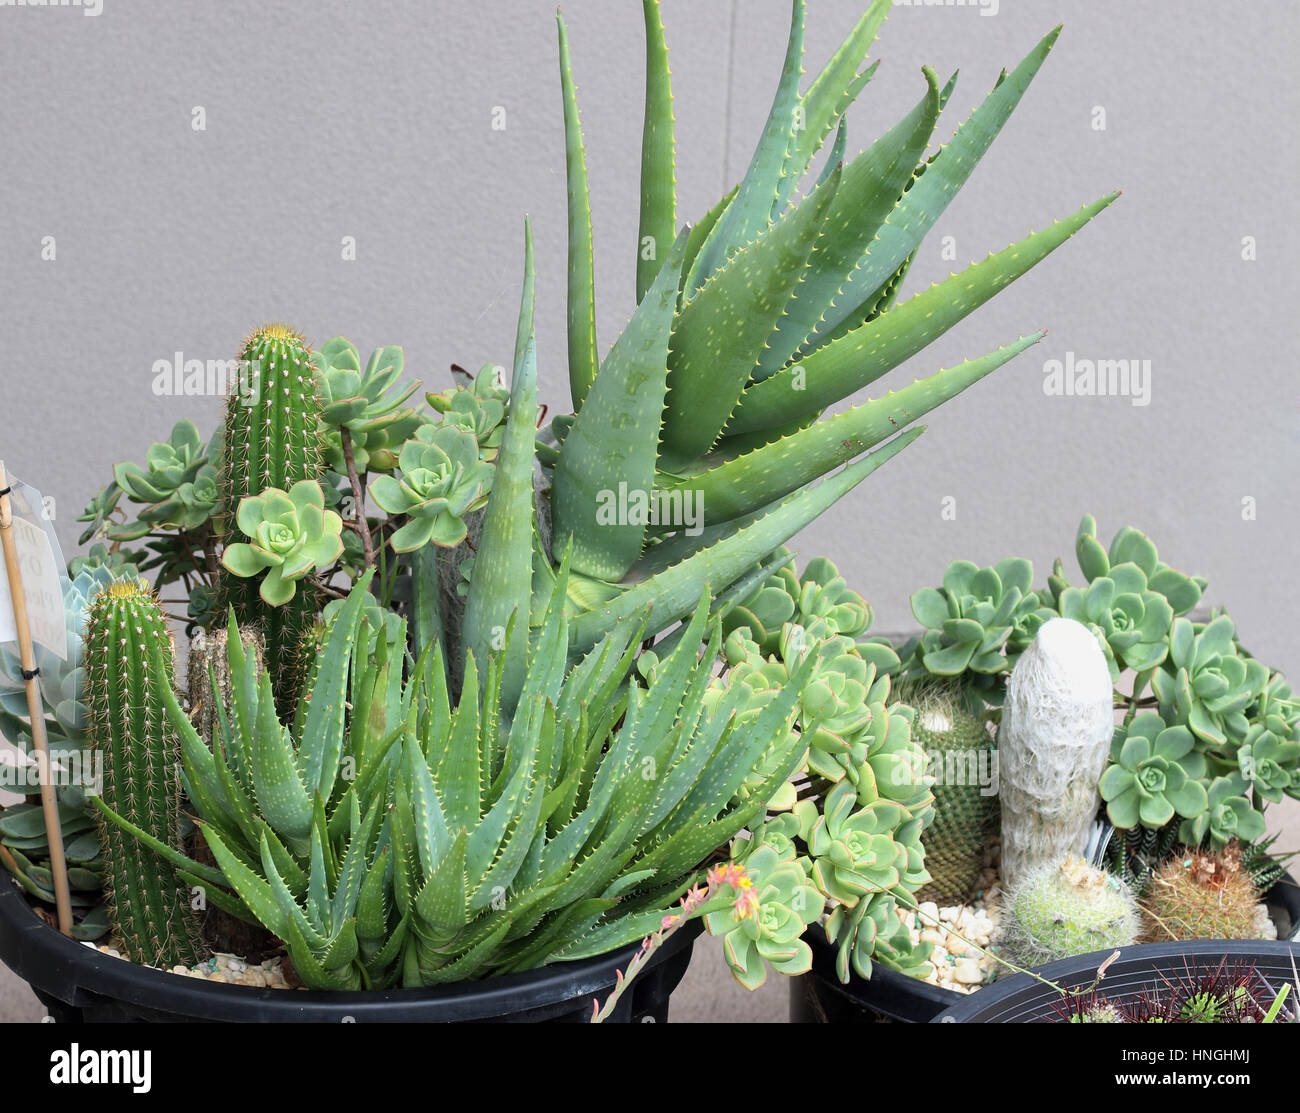 Las variedades de cactus y suculentas creciendo en una maceta Foto de stock